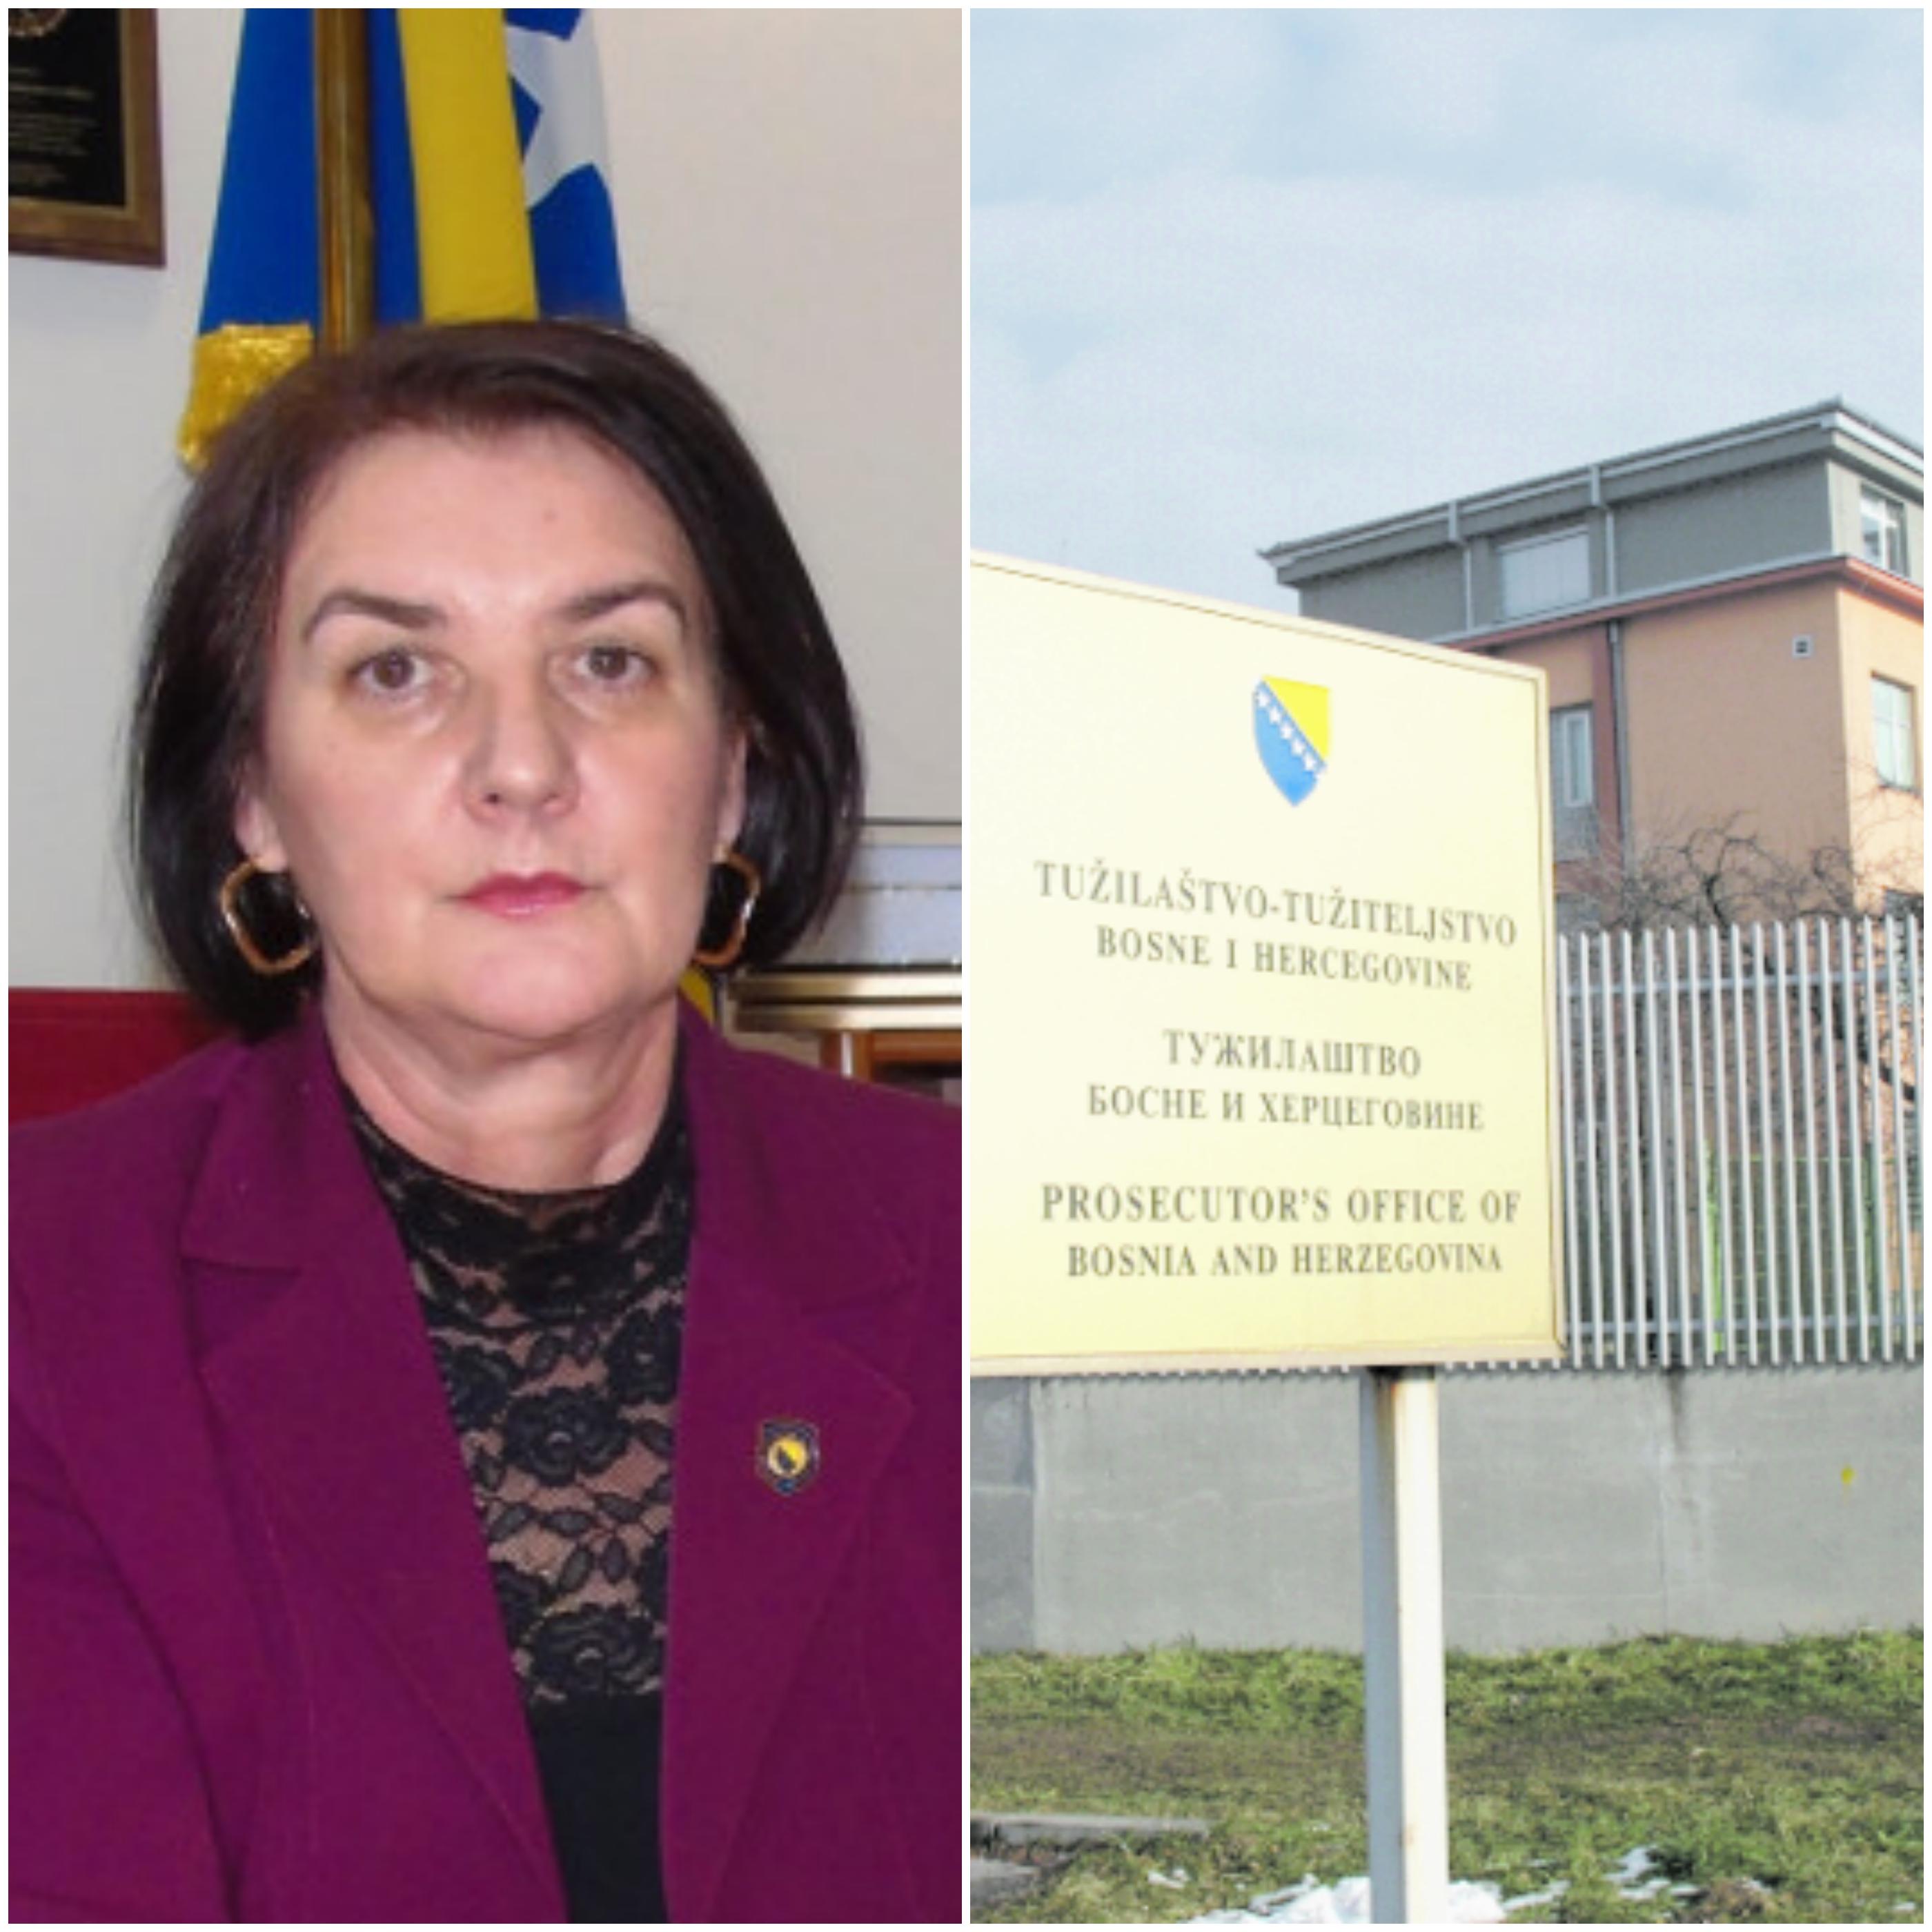 Tešku dezinformaciju protiv glavne tužiteljice Gordane Tadić objavio je žuti portal “Slobodna Bodna” - Avaz